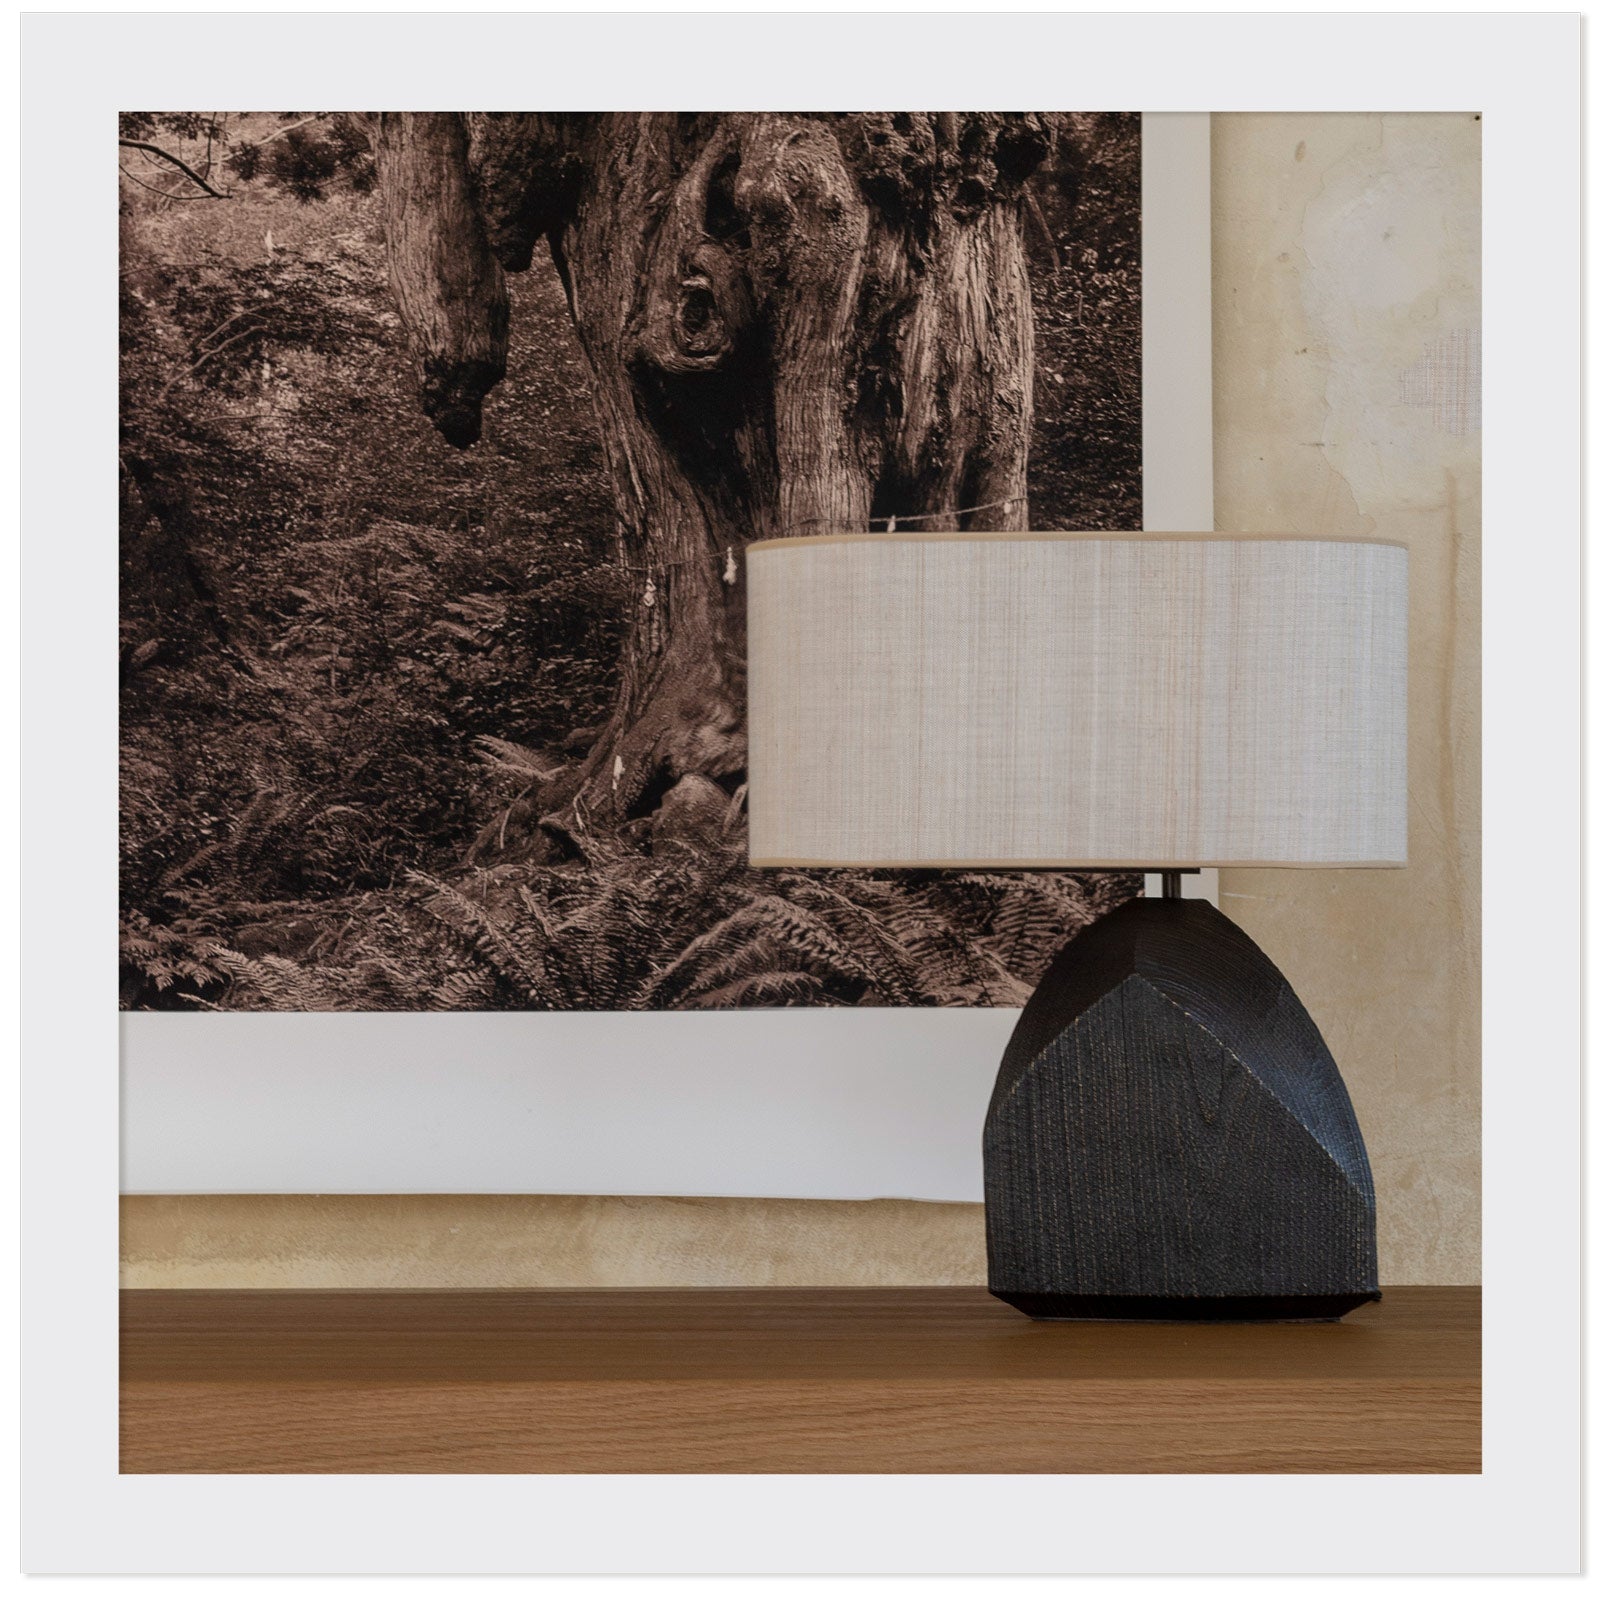 La lampe Faro en bronze et acaba posé sur une table avec une photo d'arbre en noir et blanc en arrière plan